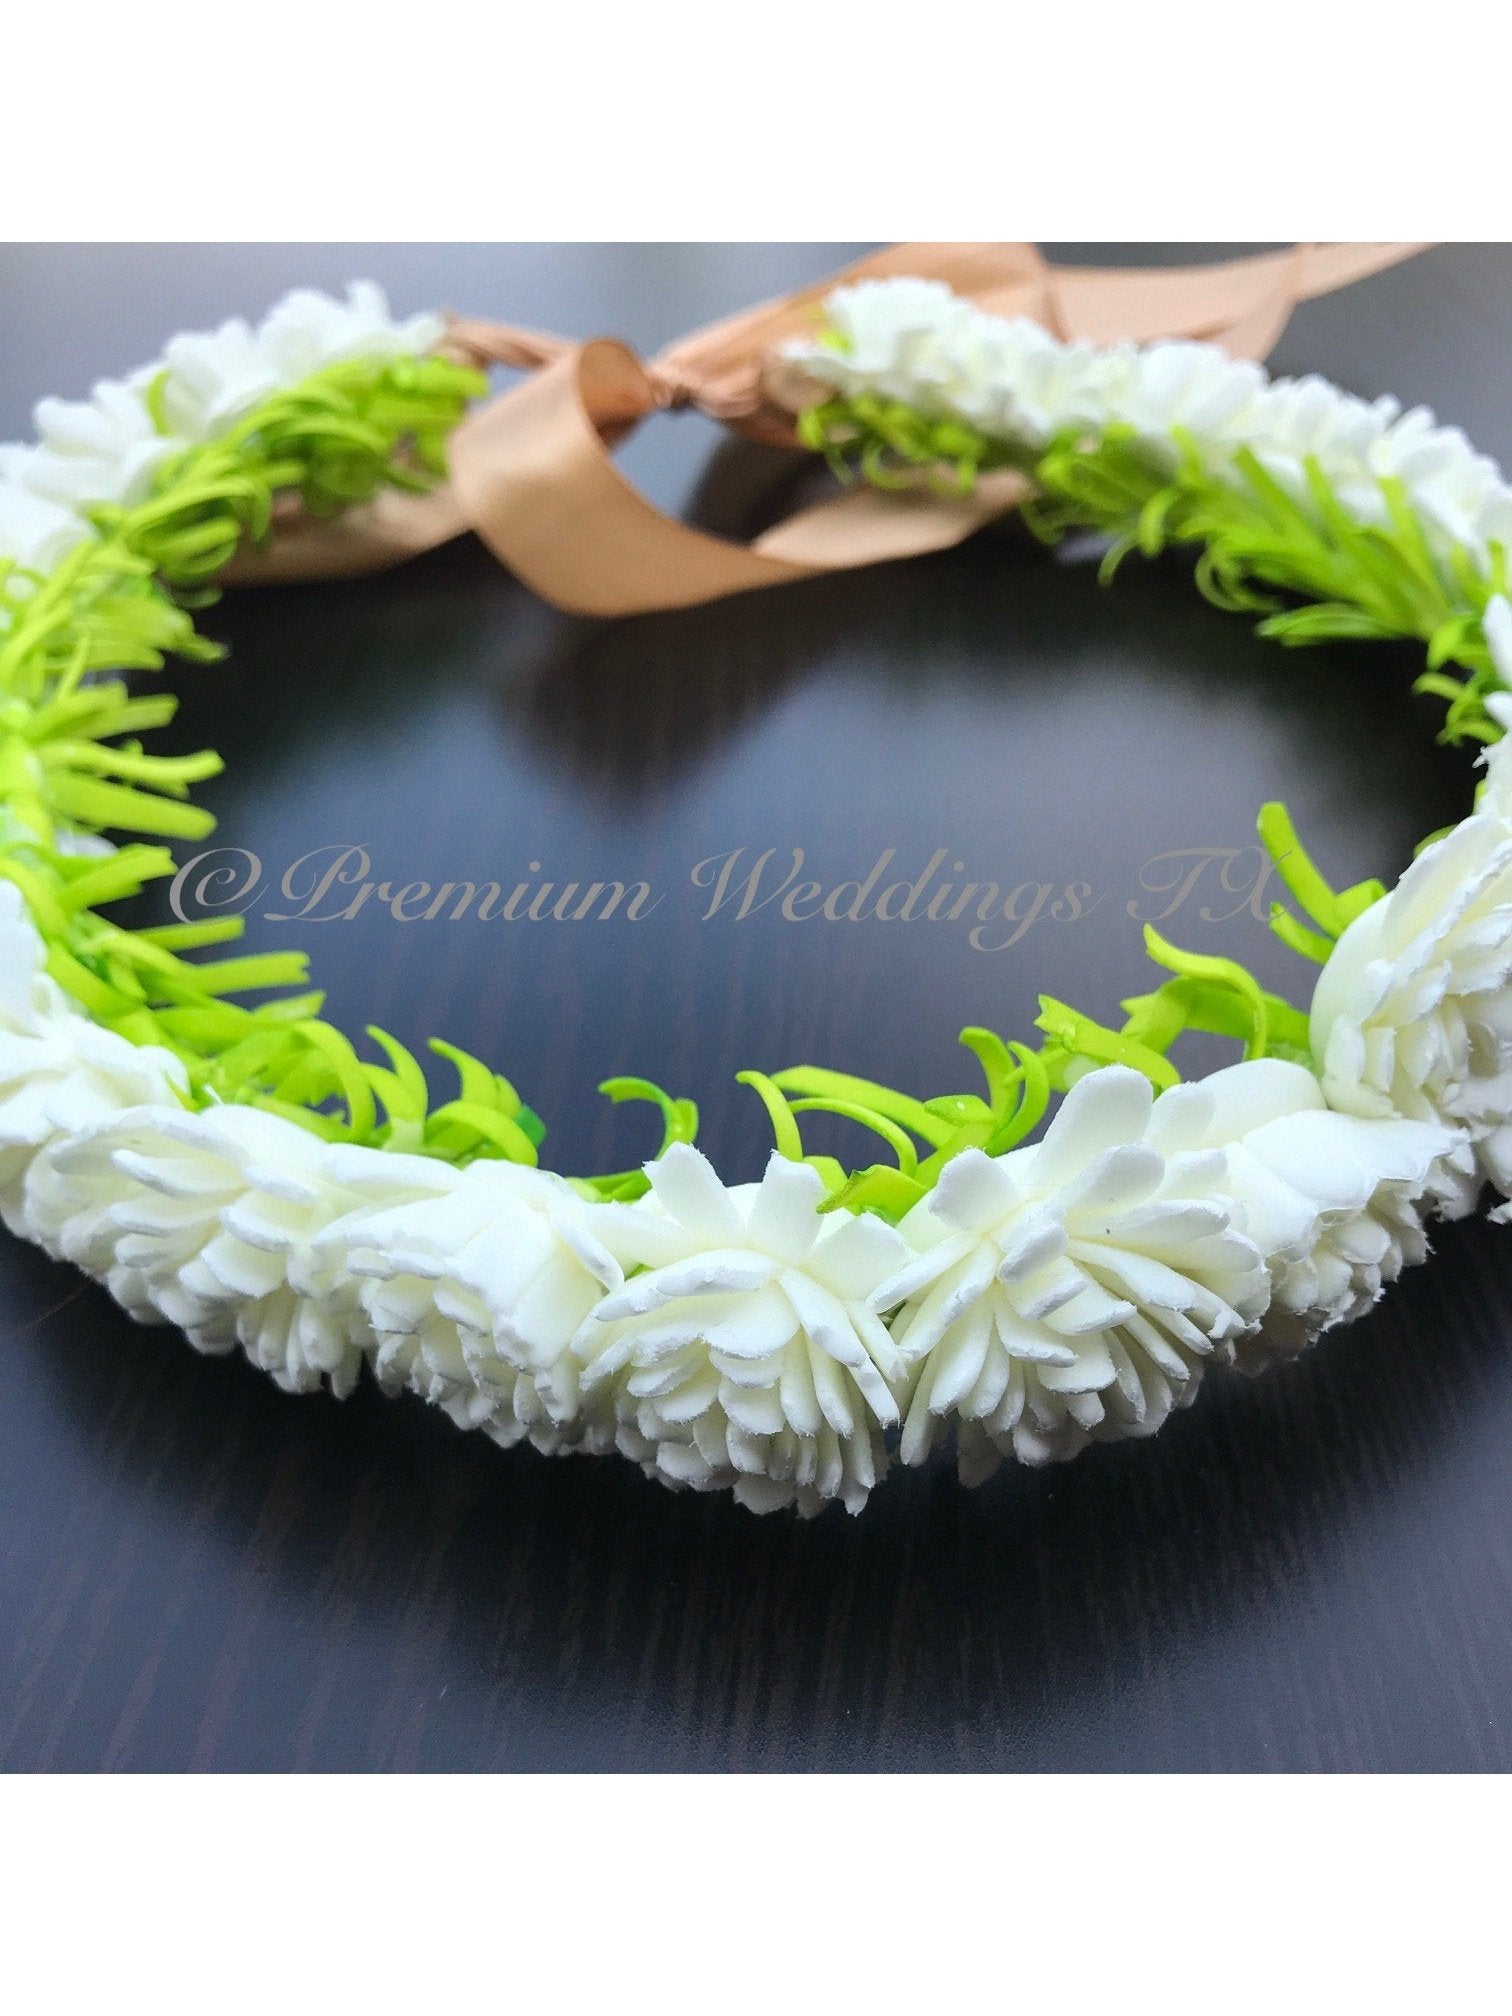 White Frill Head Wreath - 1 - Premium Weddings TX